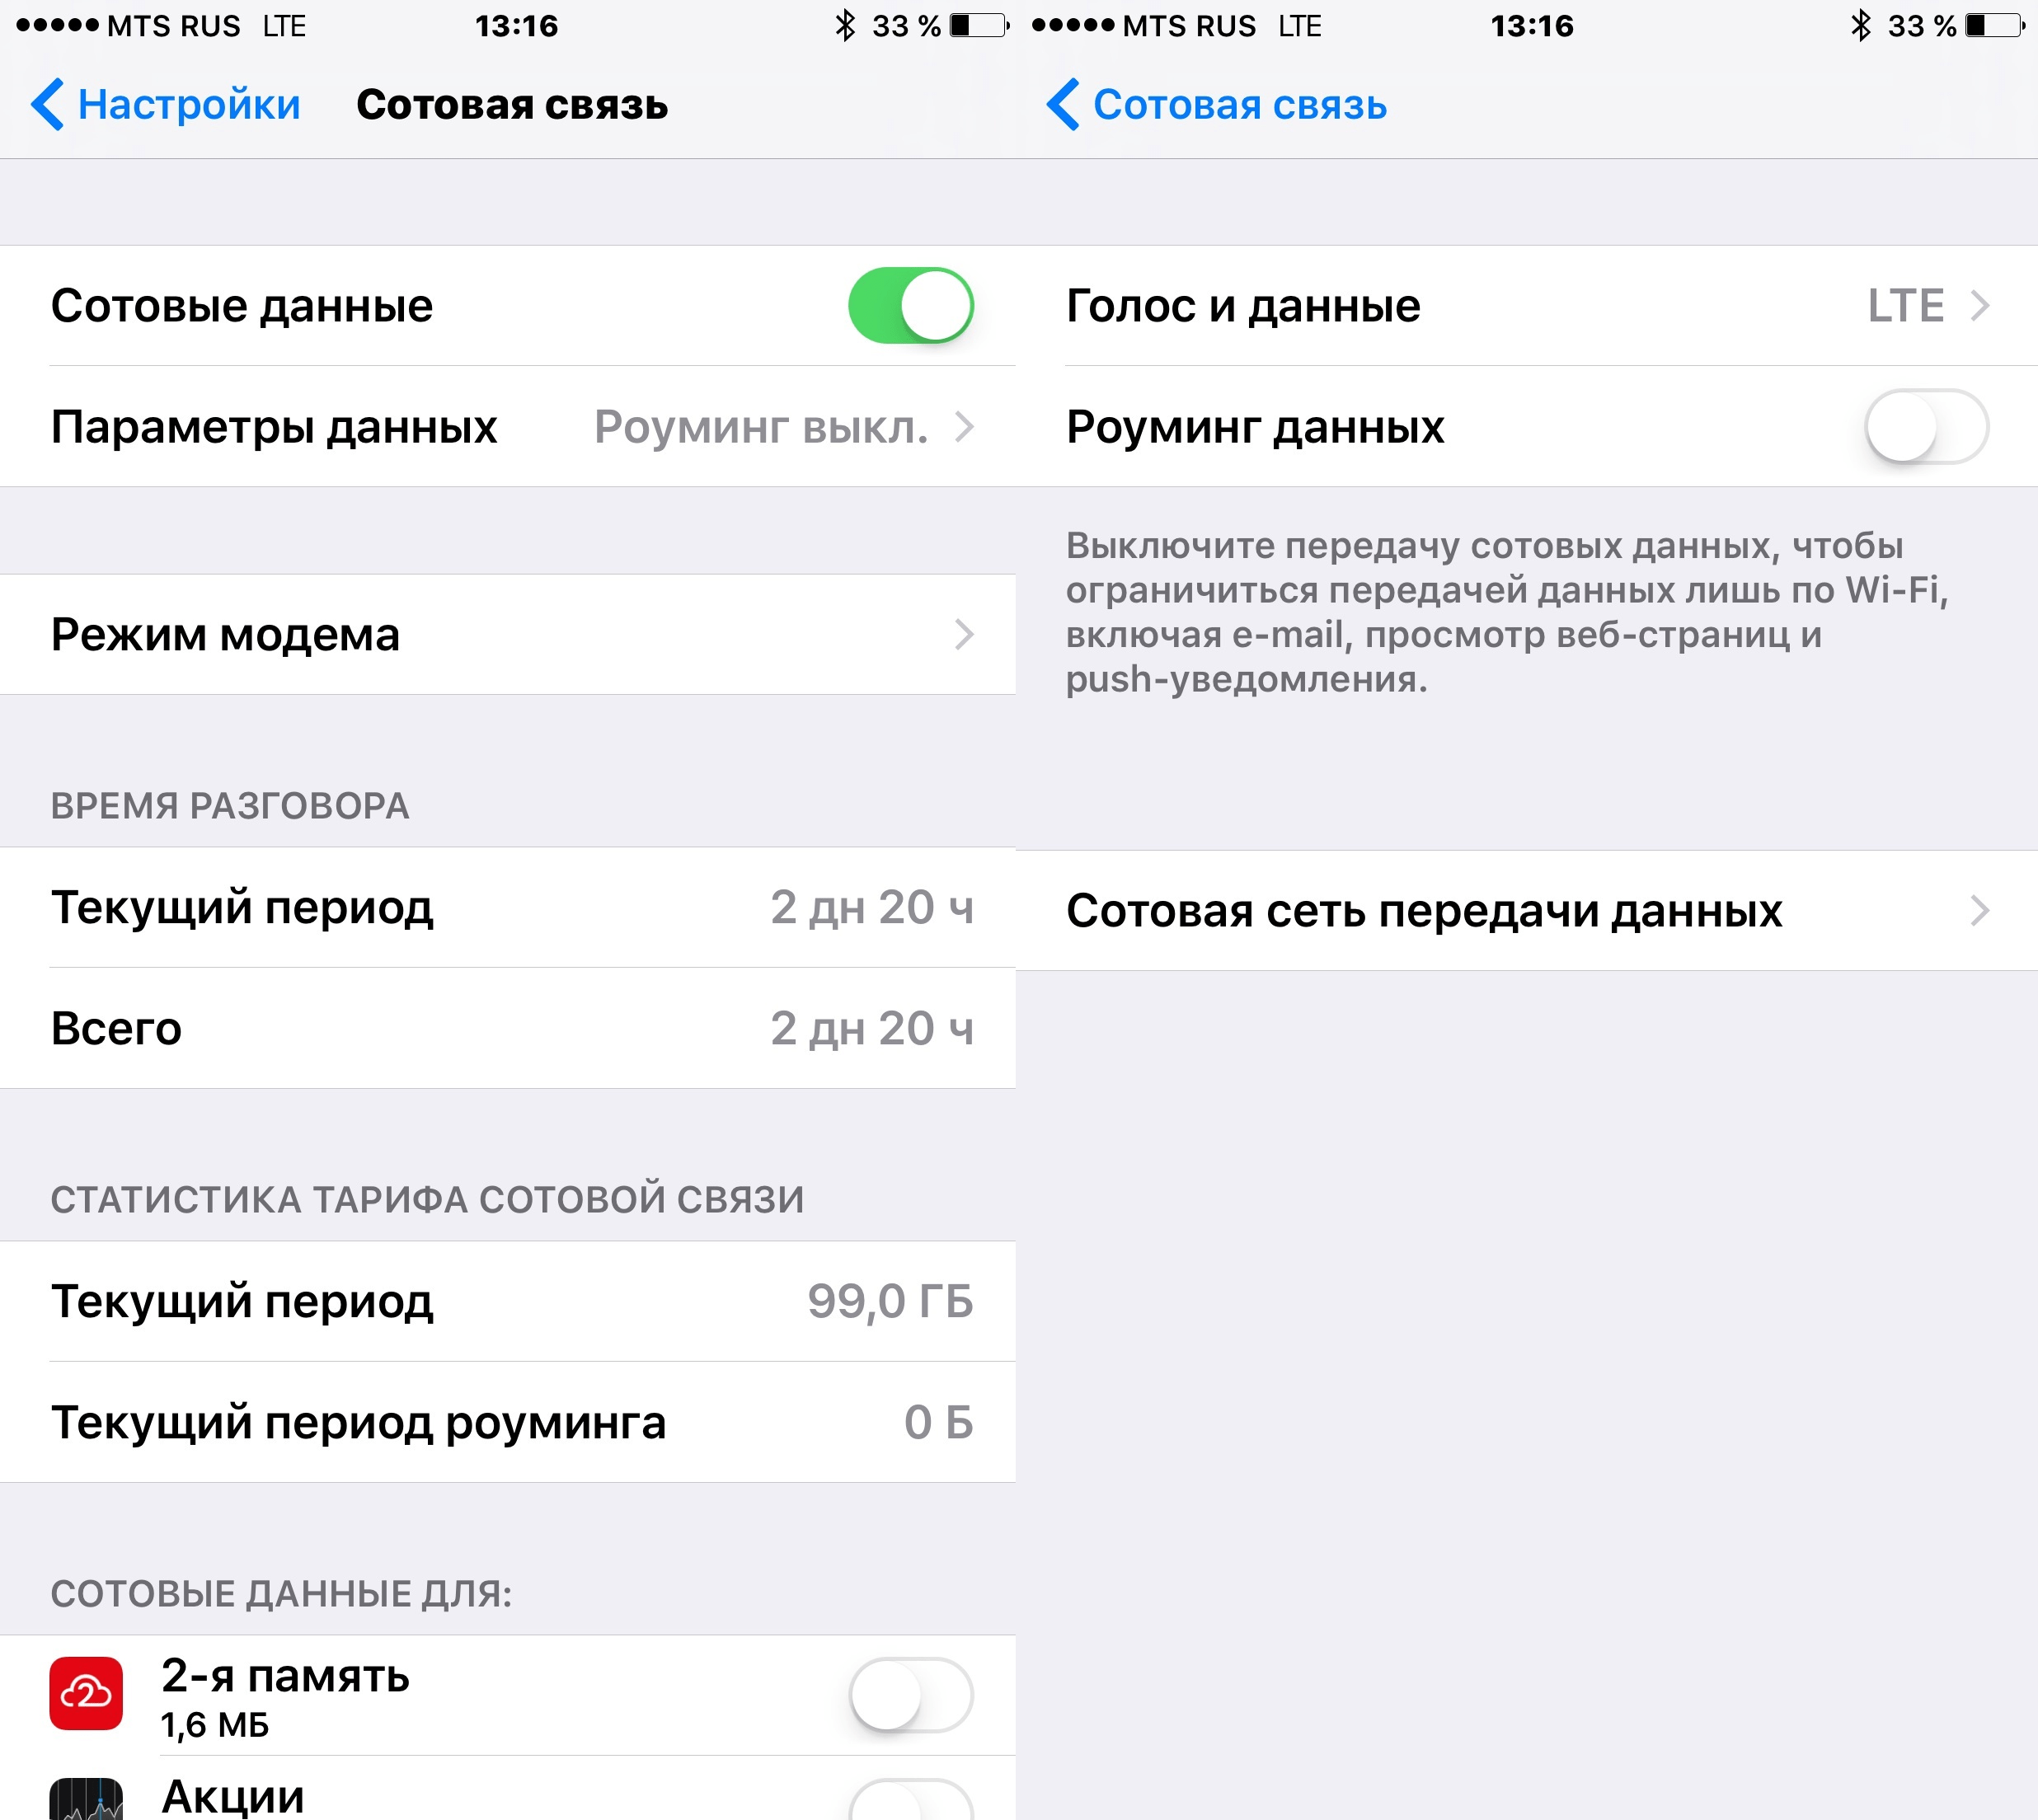 Как подключить айфон к интернету и настроить - инструкция тарифкин.ру
как подключить айфон к интернету и настроить - инструкция